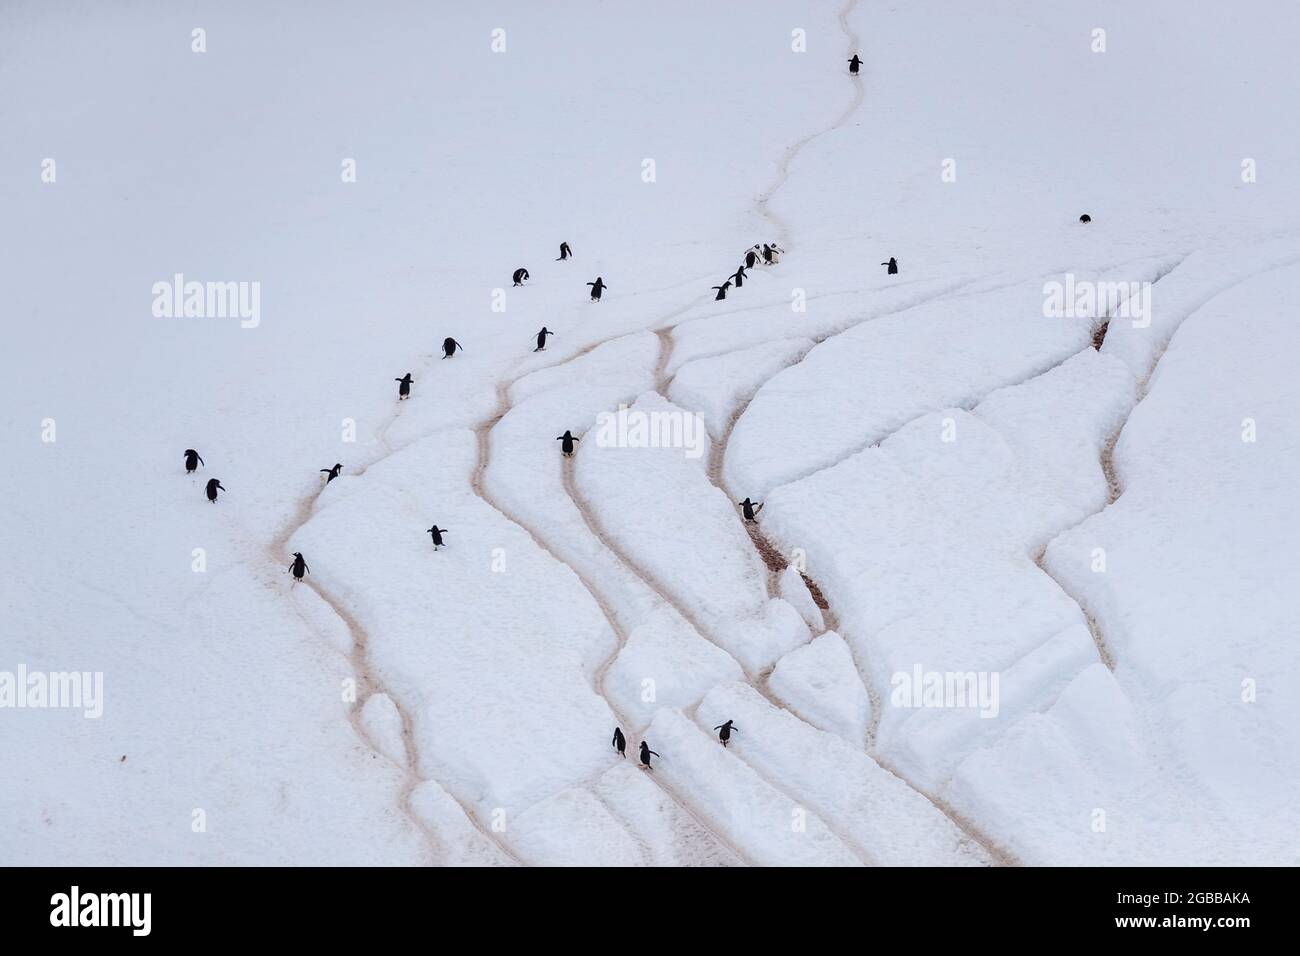 Manchots gentoo adultes (Pygoscelis papouasie), marchant sur les autoroutes des pingouins, l'île Danco, l'Antarctique, les régions polaires Banque D'Images